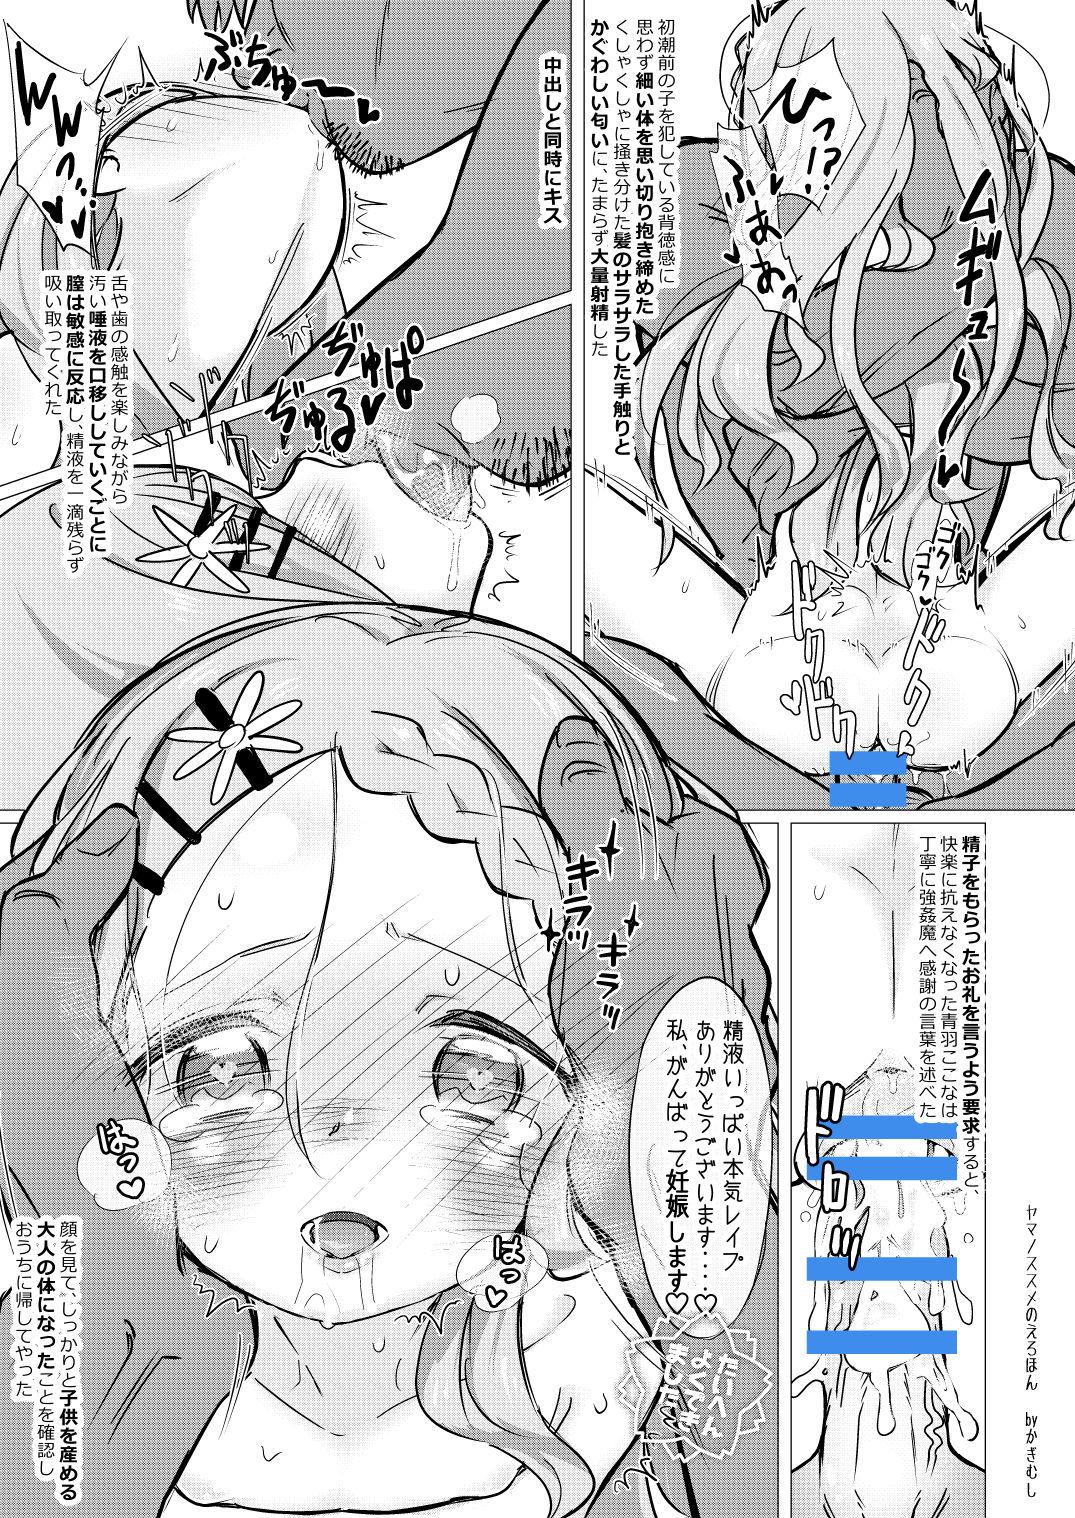 Reverse Yama no Susume no Erohon - Yama no susume Mamadas - Page 10